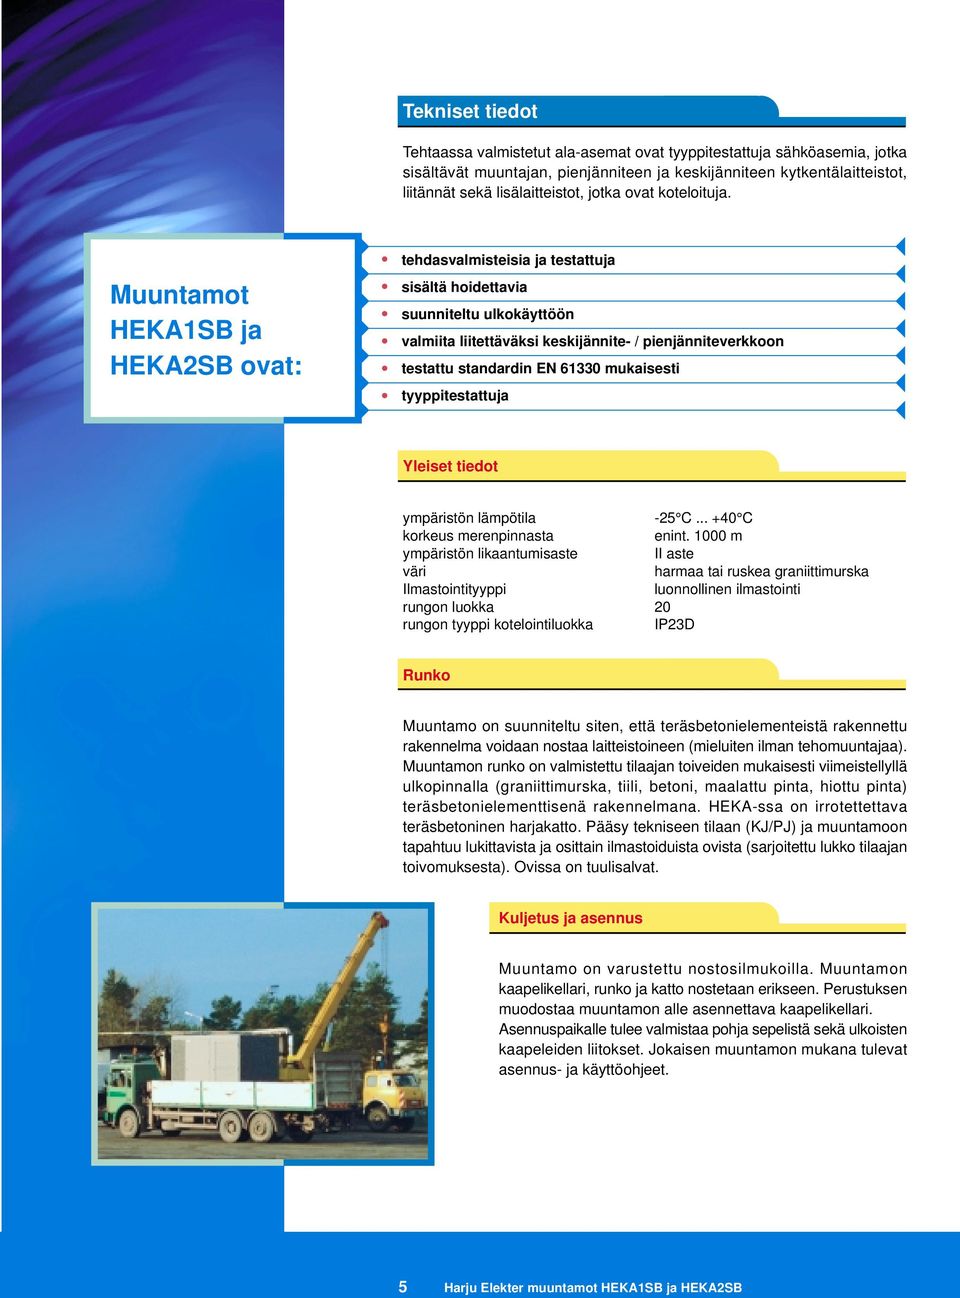 Muuntamot HEKA1SB ja HEKA2SB ovat: tehdasvalmisteisia ja testattuja sisältä hoidettavia suunniteltu ulkokäyttöön valmiita liitettäväksi keskijännite- / pienjänniteverkkoon testattu standardin EN